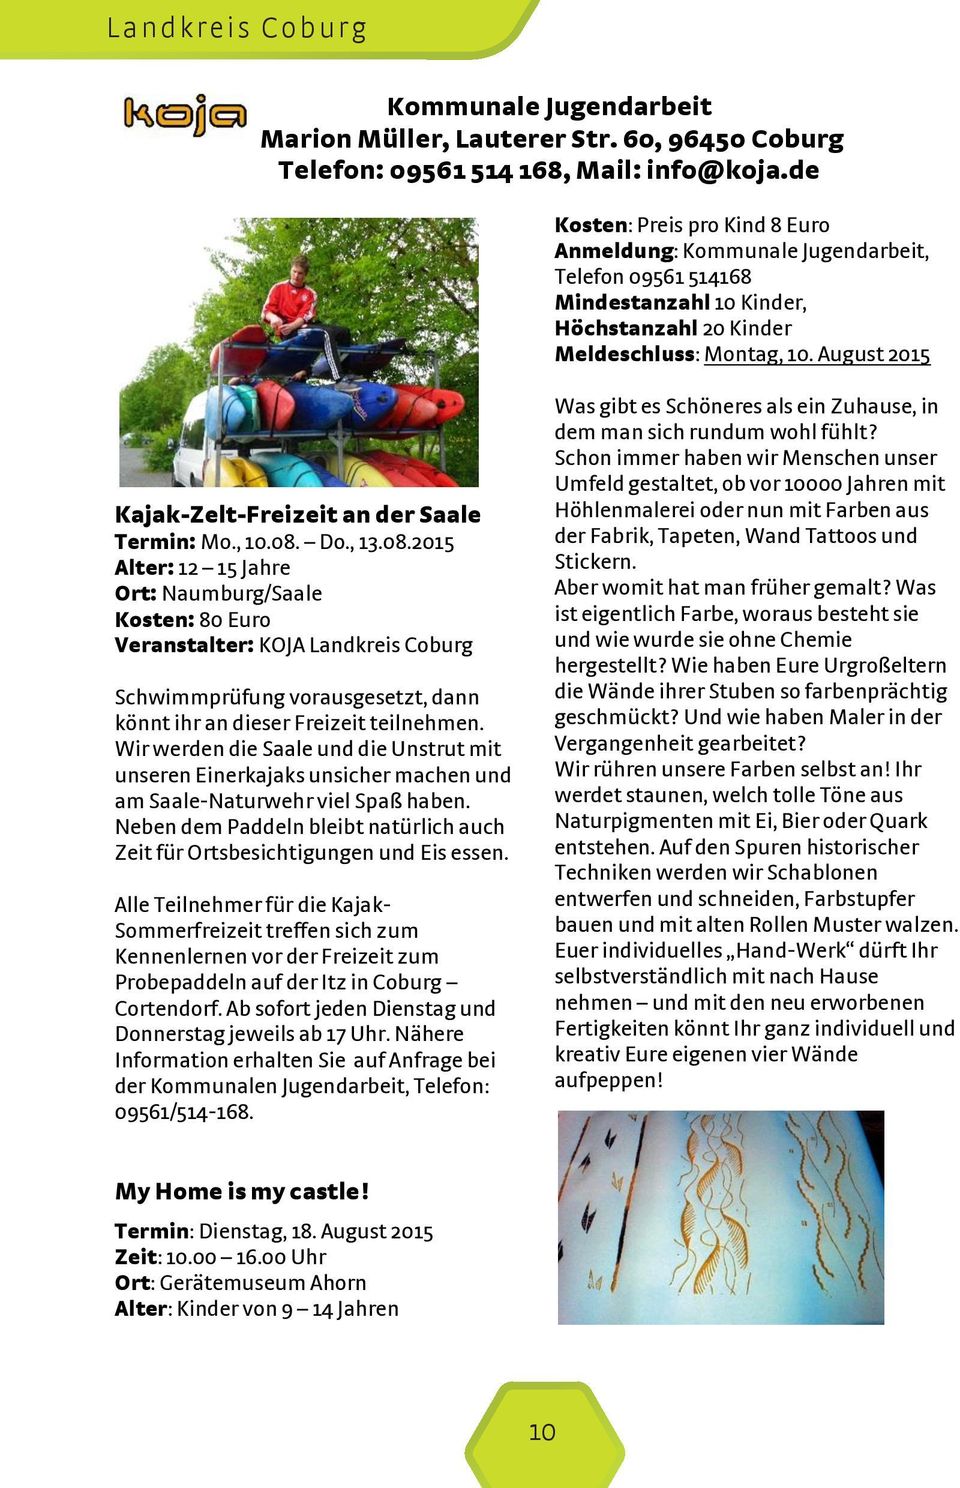 August 2015 Kajak-Zelt-Freizeit an der Saale Termin: Mo., 10.08.